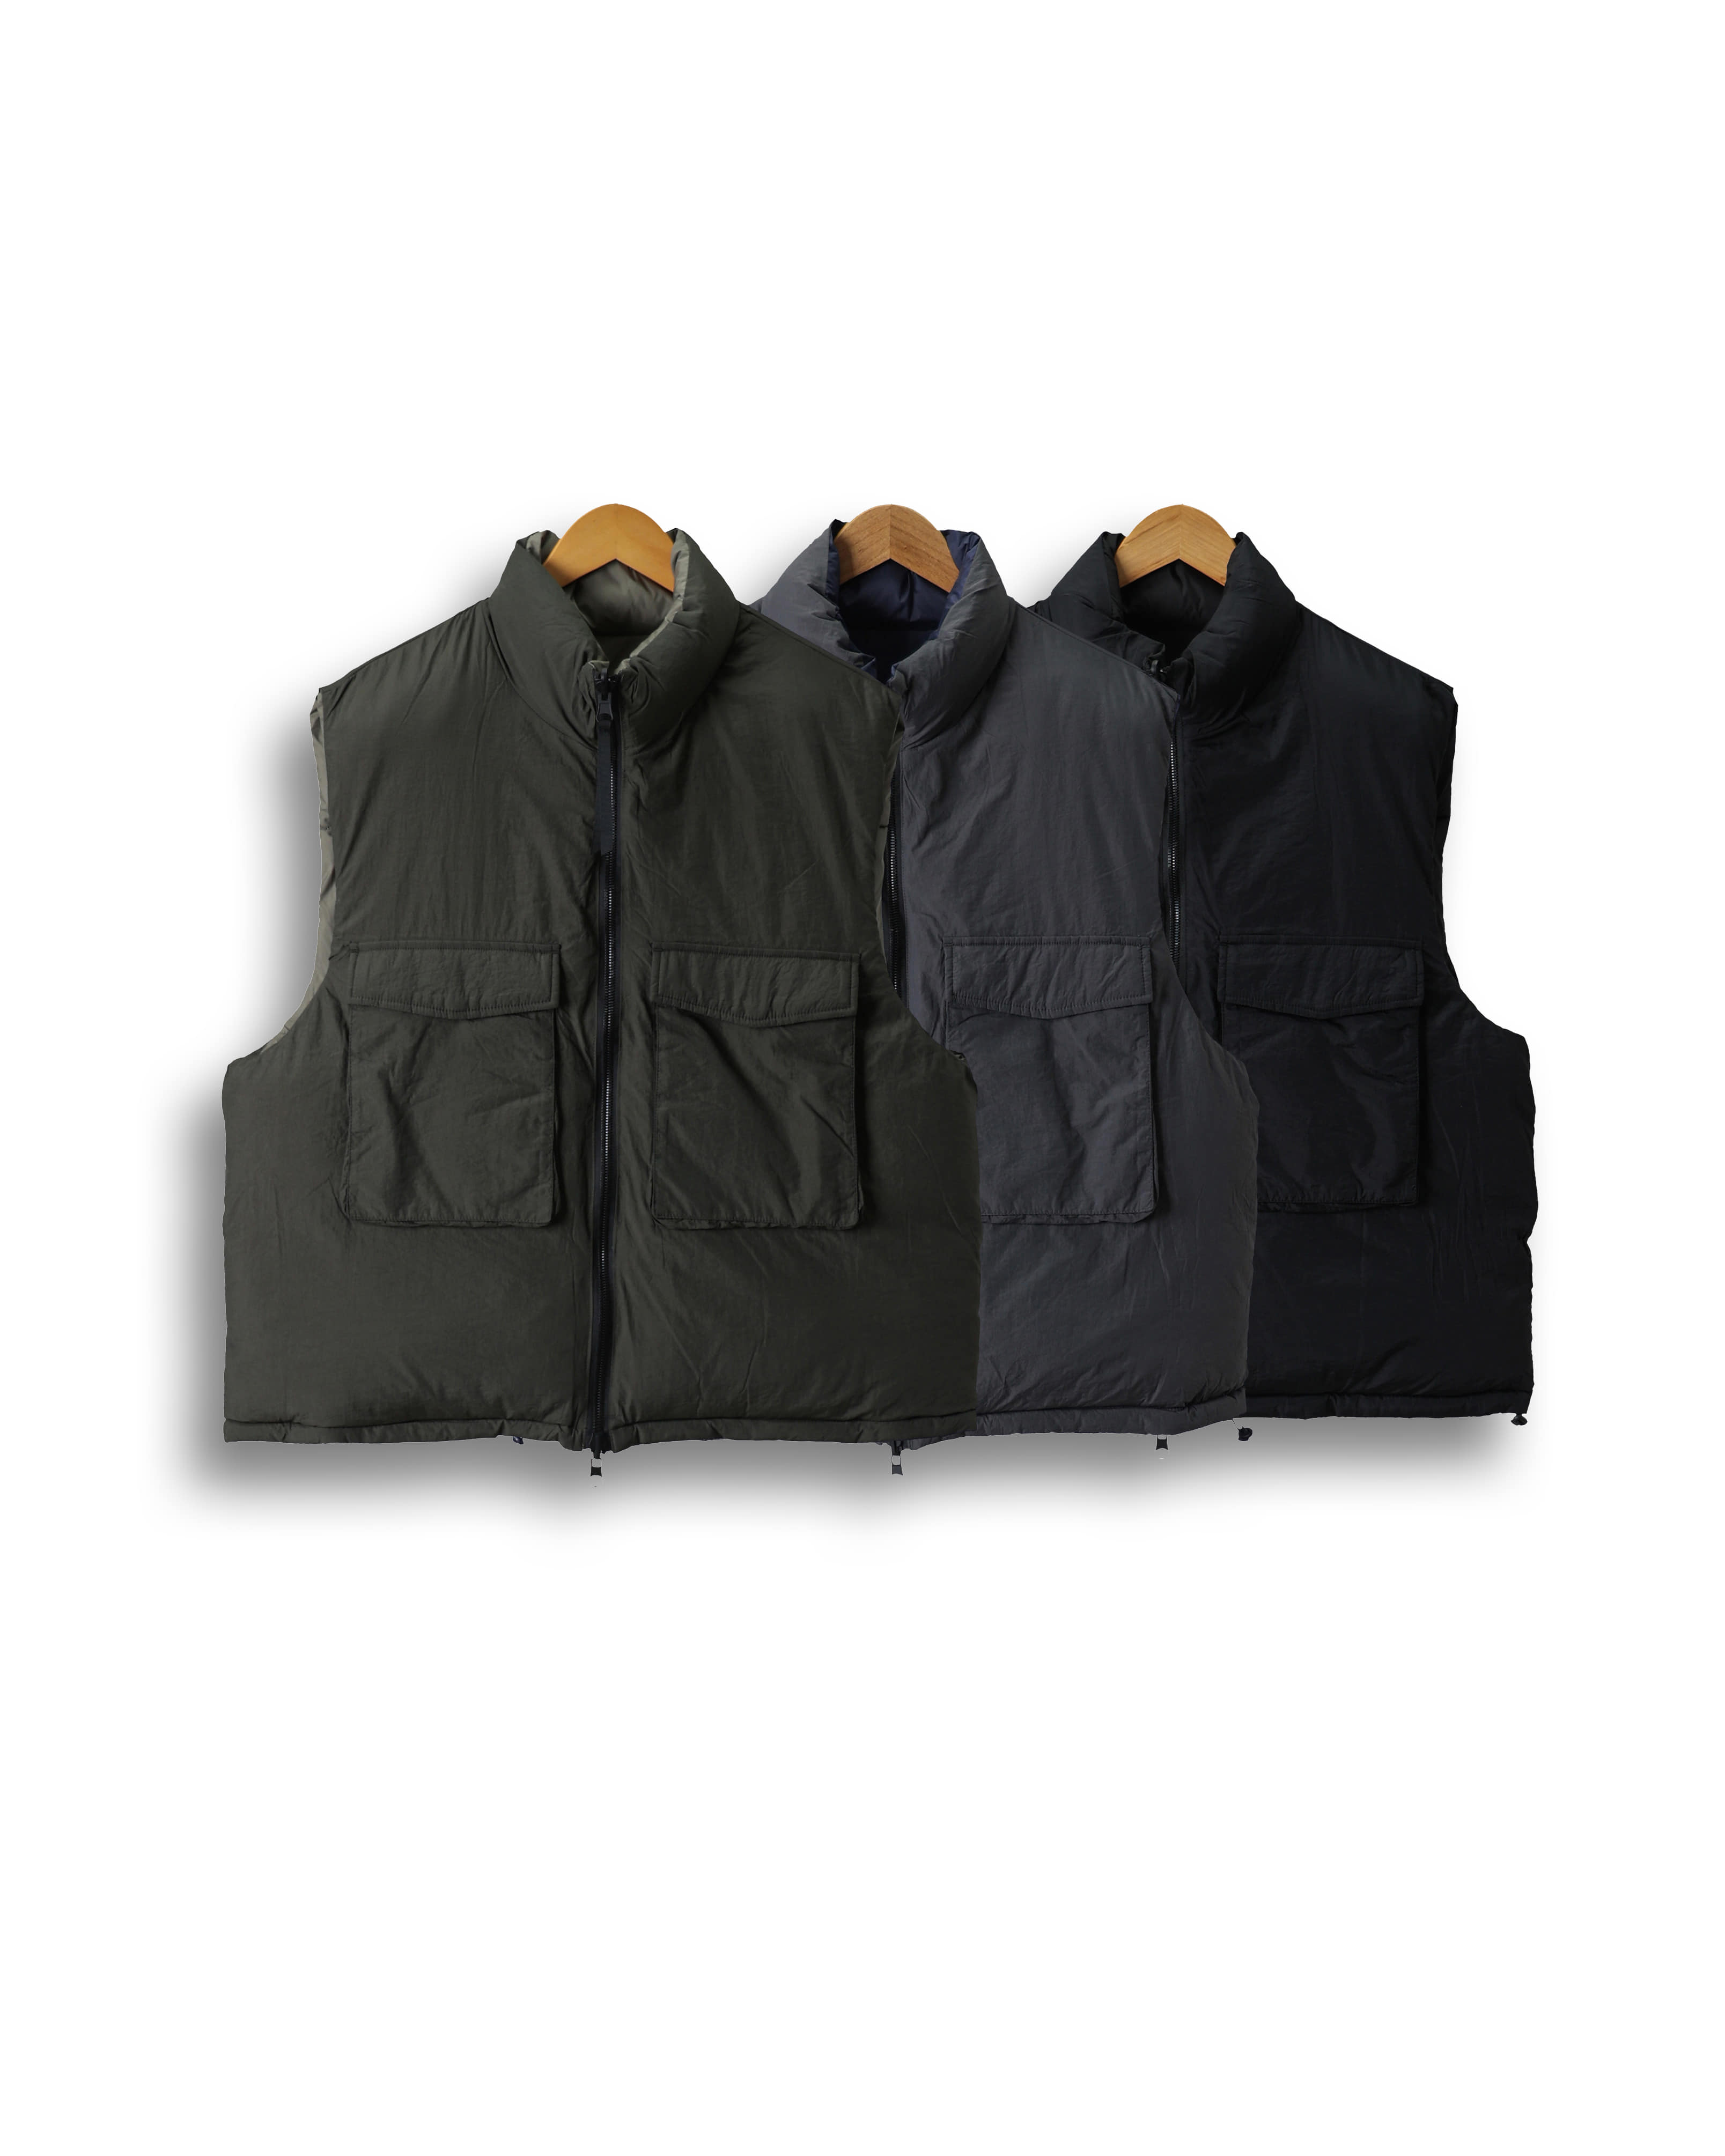 EXPRESS Reversible Wellon Padded Vest (Black/Dark Gray/Olive)